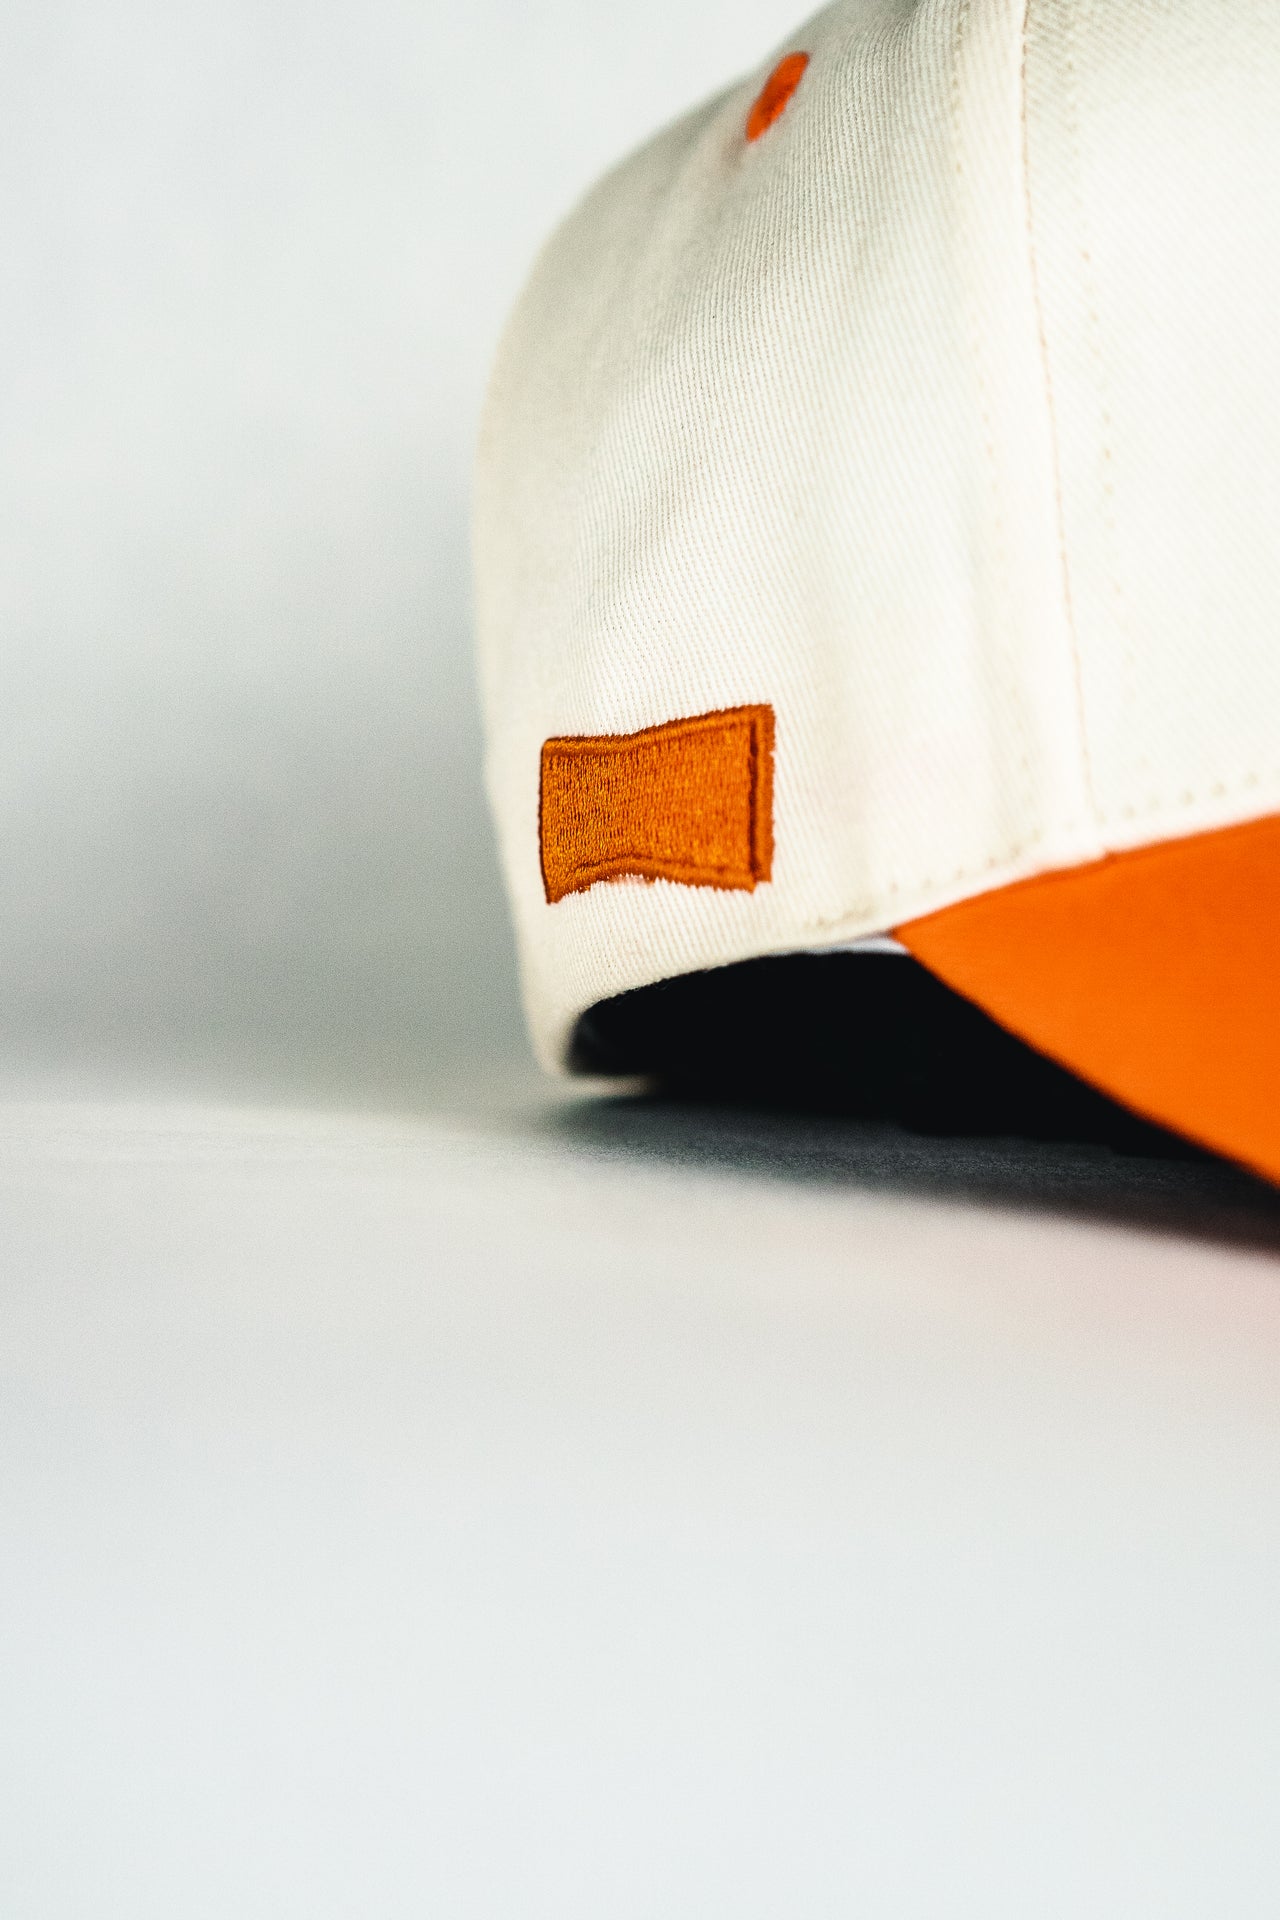 GT Orange Pop Hat (Orange/ White)